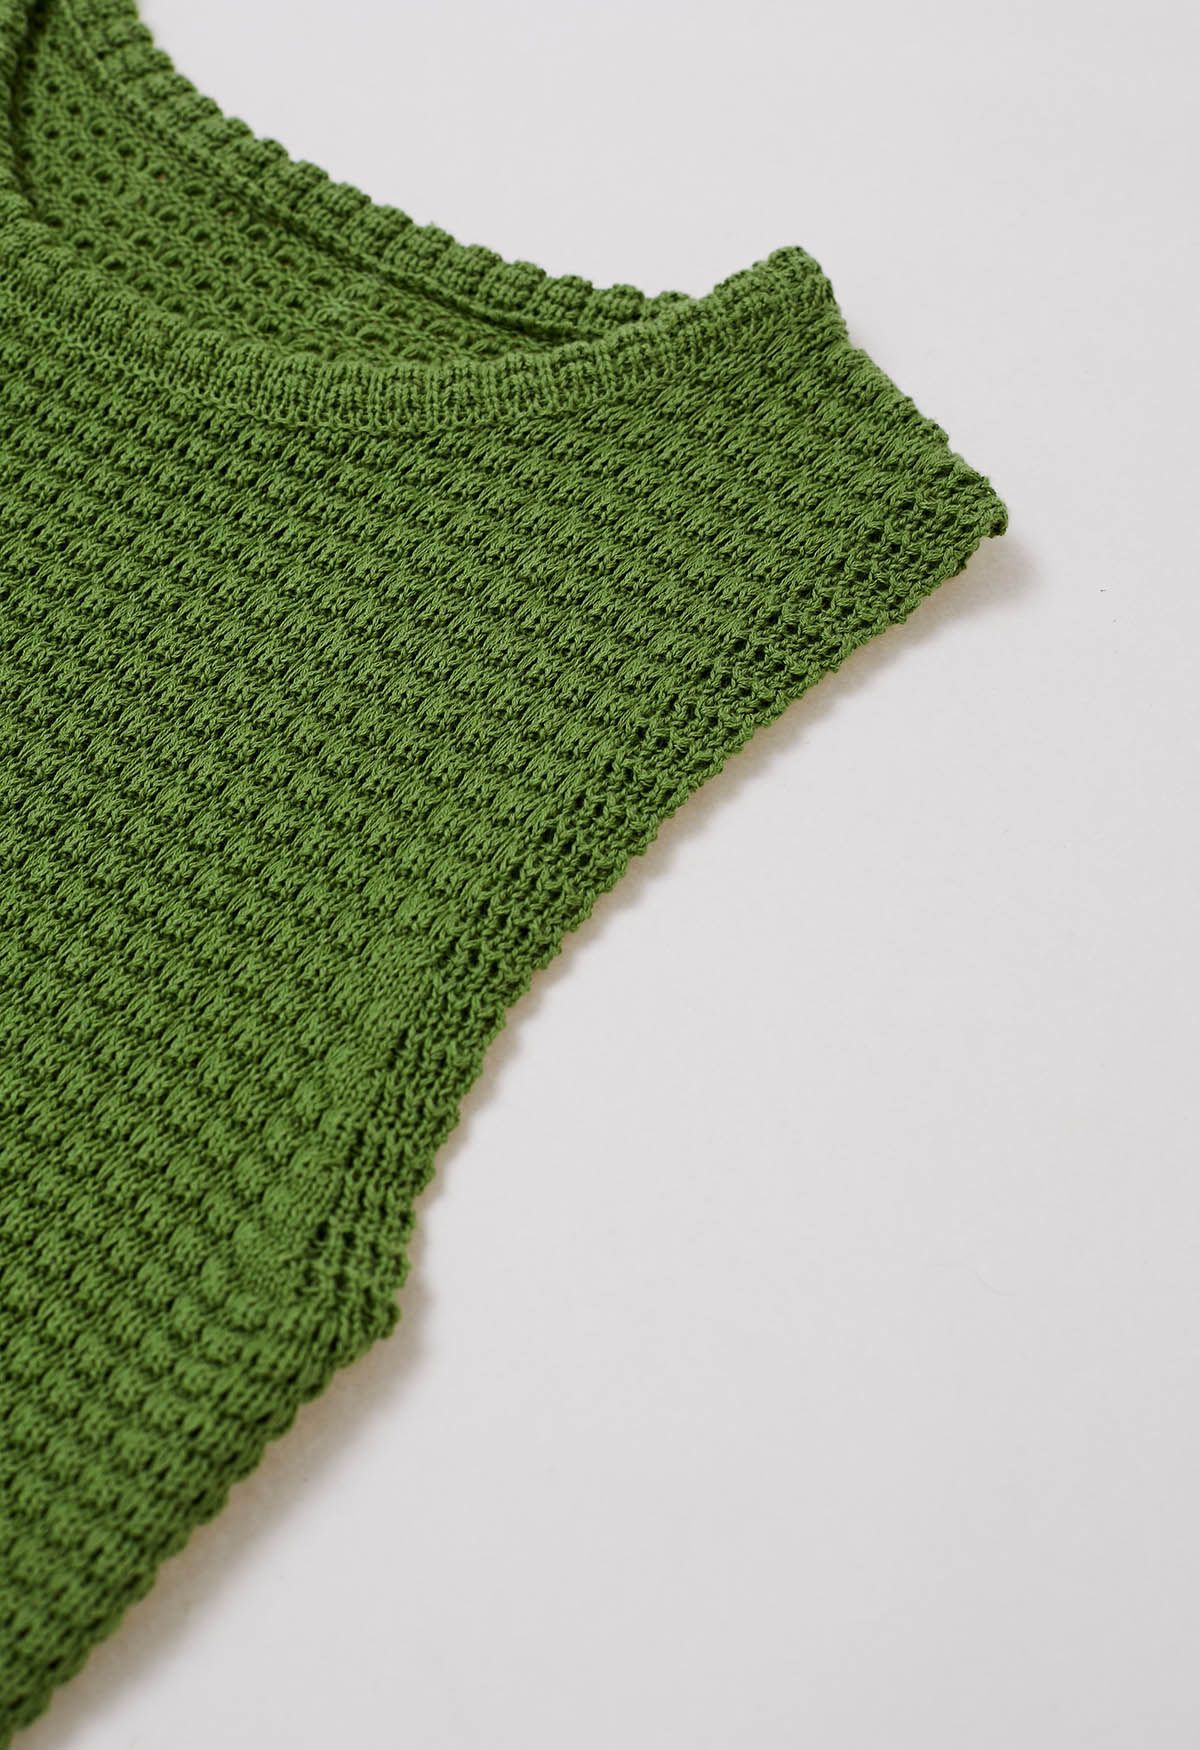 Haut sans manches en tricot ajouré de couleur unie en vert